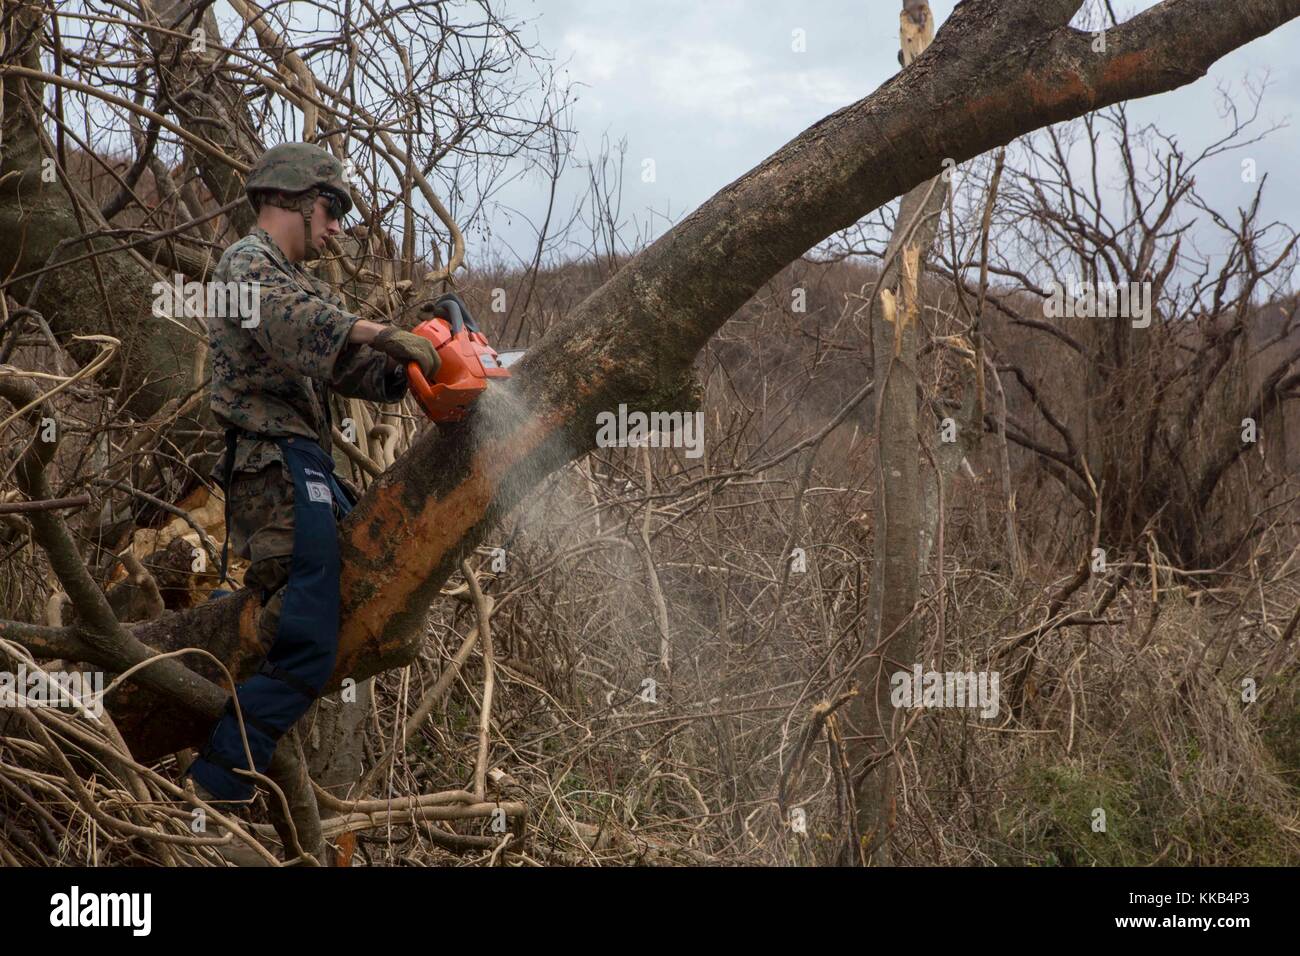 Un soldat du corps des Marines américain abat un arbre bloquer une route au cours d'efforts de secours à la suite du cyclone maria le 25 septembre 2017 à st. croix, îles Vierges des États-Unis. (Photo de santino d. martinez via planetpix) Banque D'Images